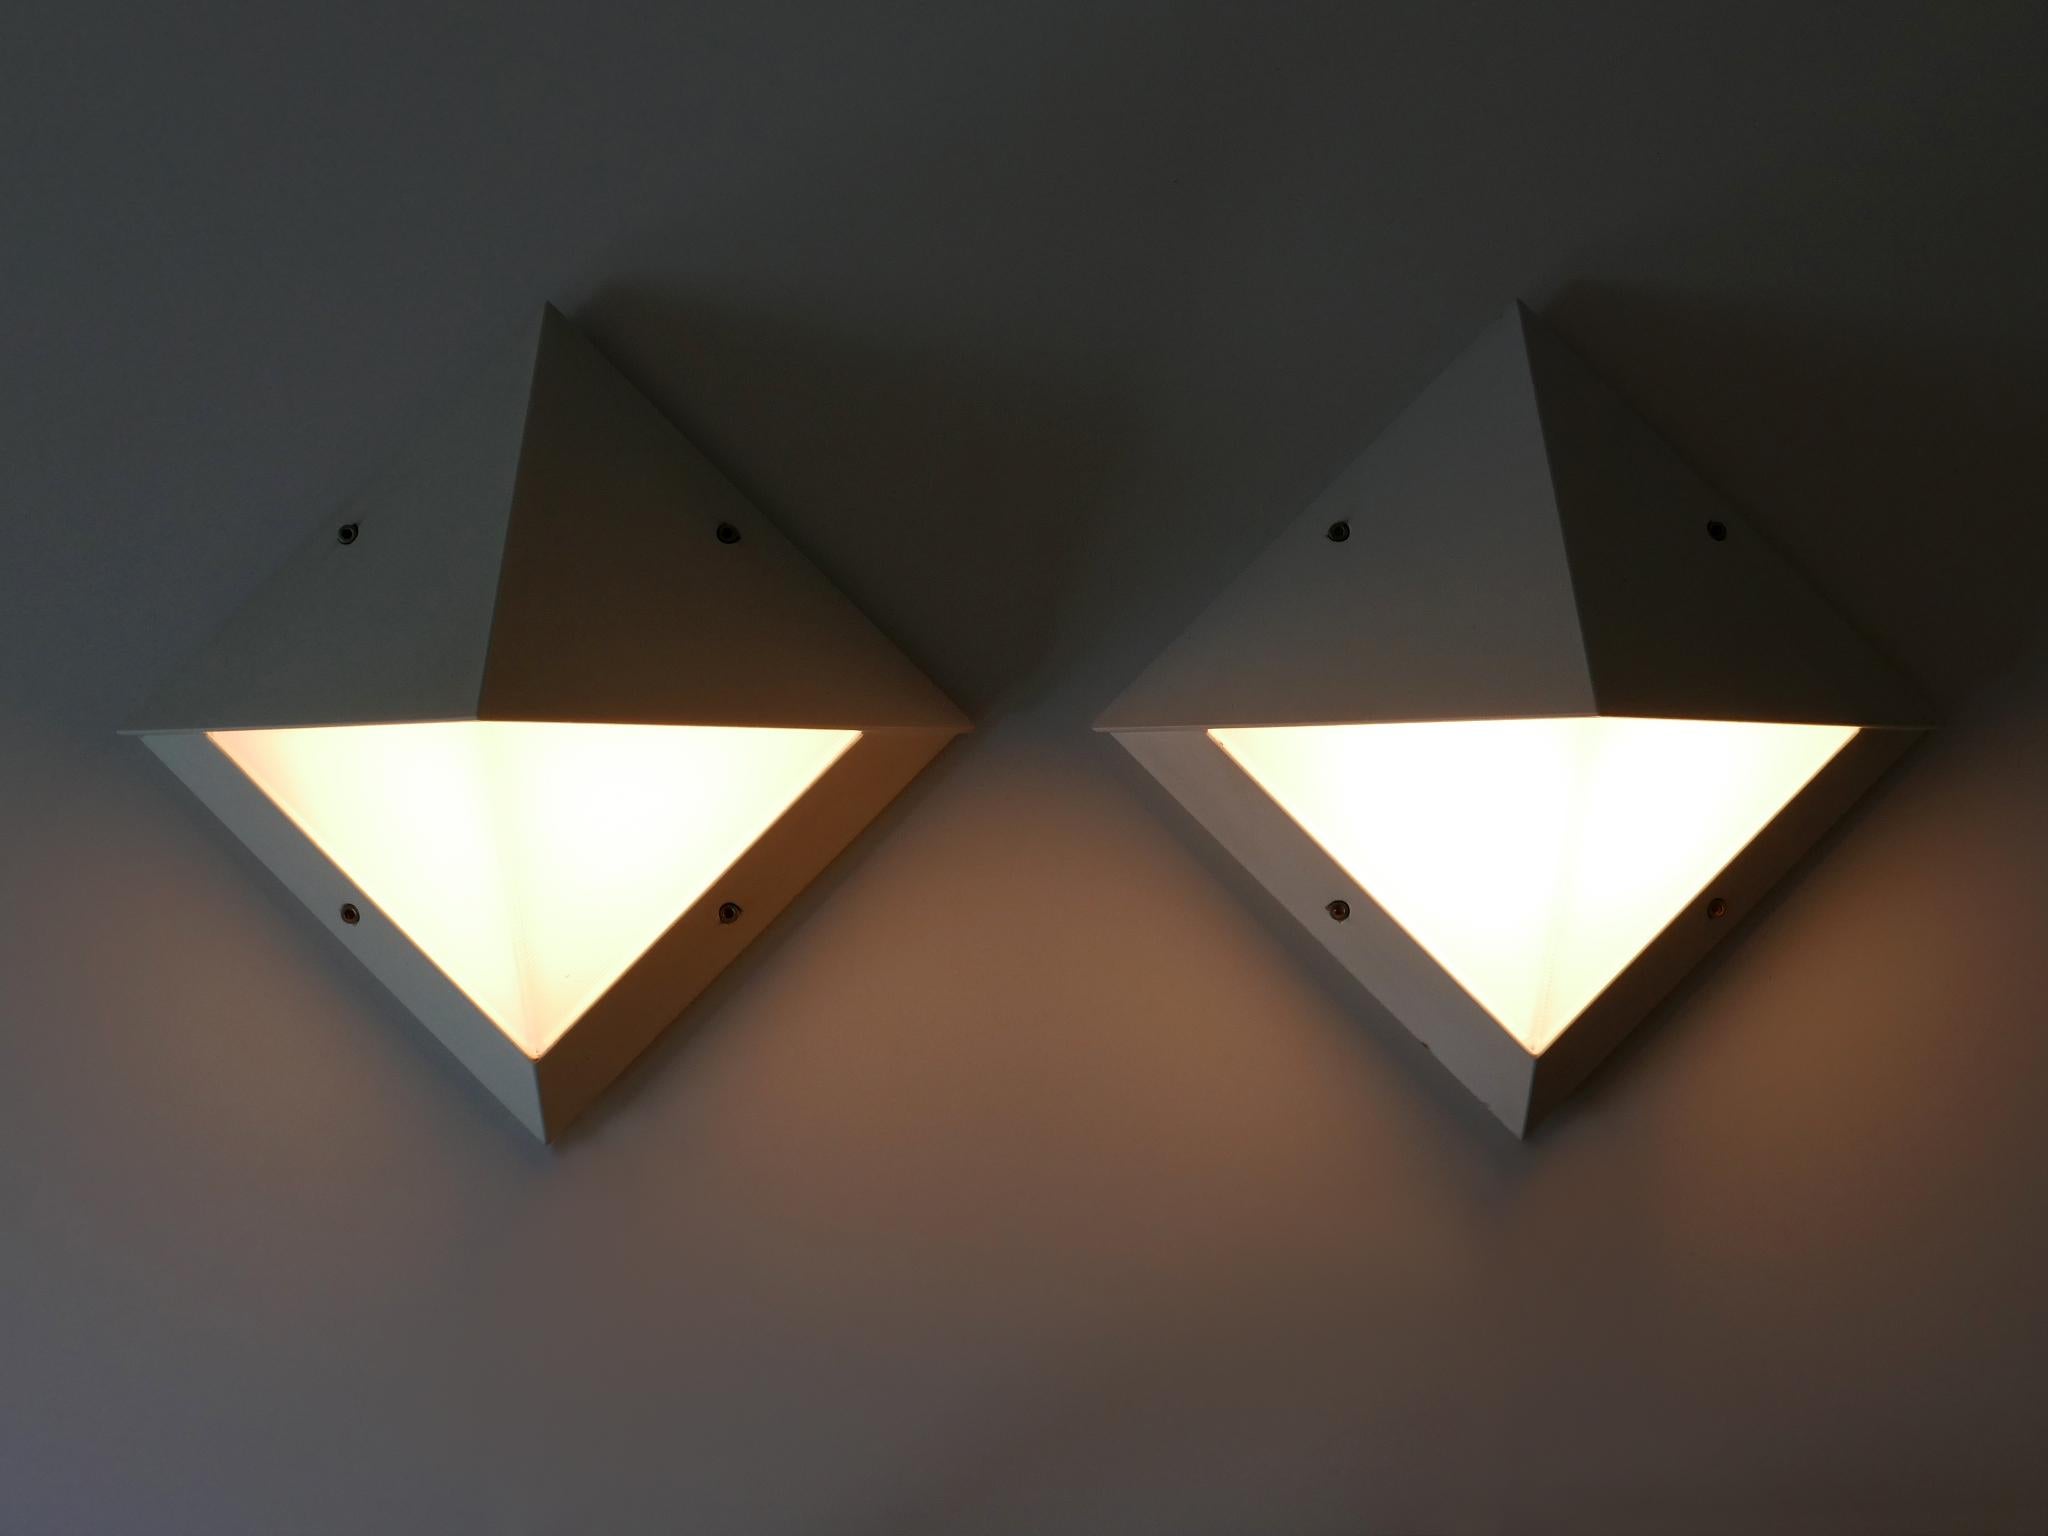 Set aus zwei eleganten modernistischen Wandlampen oder Wandleuchtern für den Außenbereich. Entworfen und hergestellt von BEGA, Deutschland, 1980er Jahre.

Insgesamt sind vier Paare in dieser Größe erhältlich!

Jede Lampe ist aus weiß